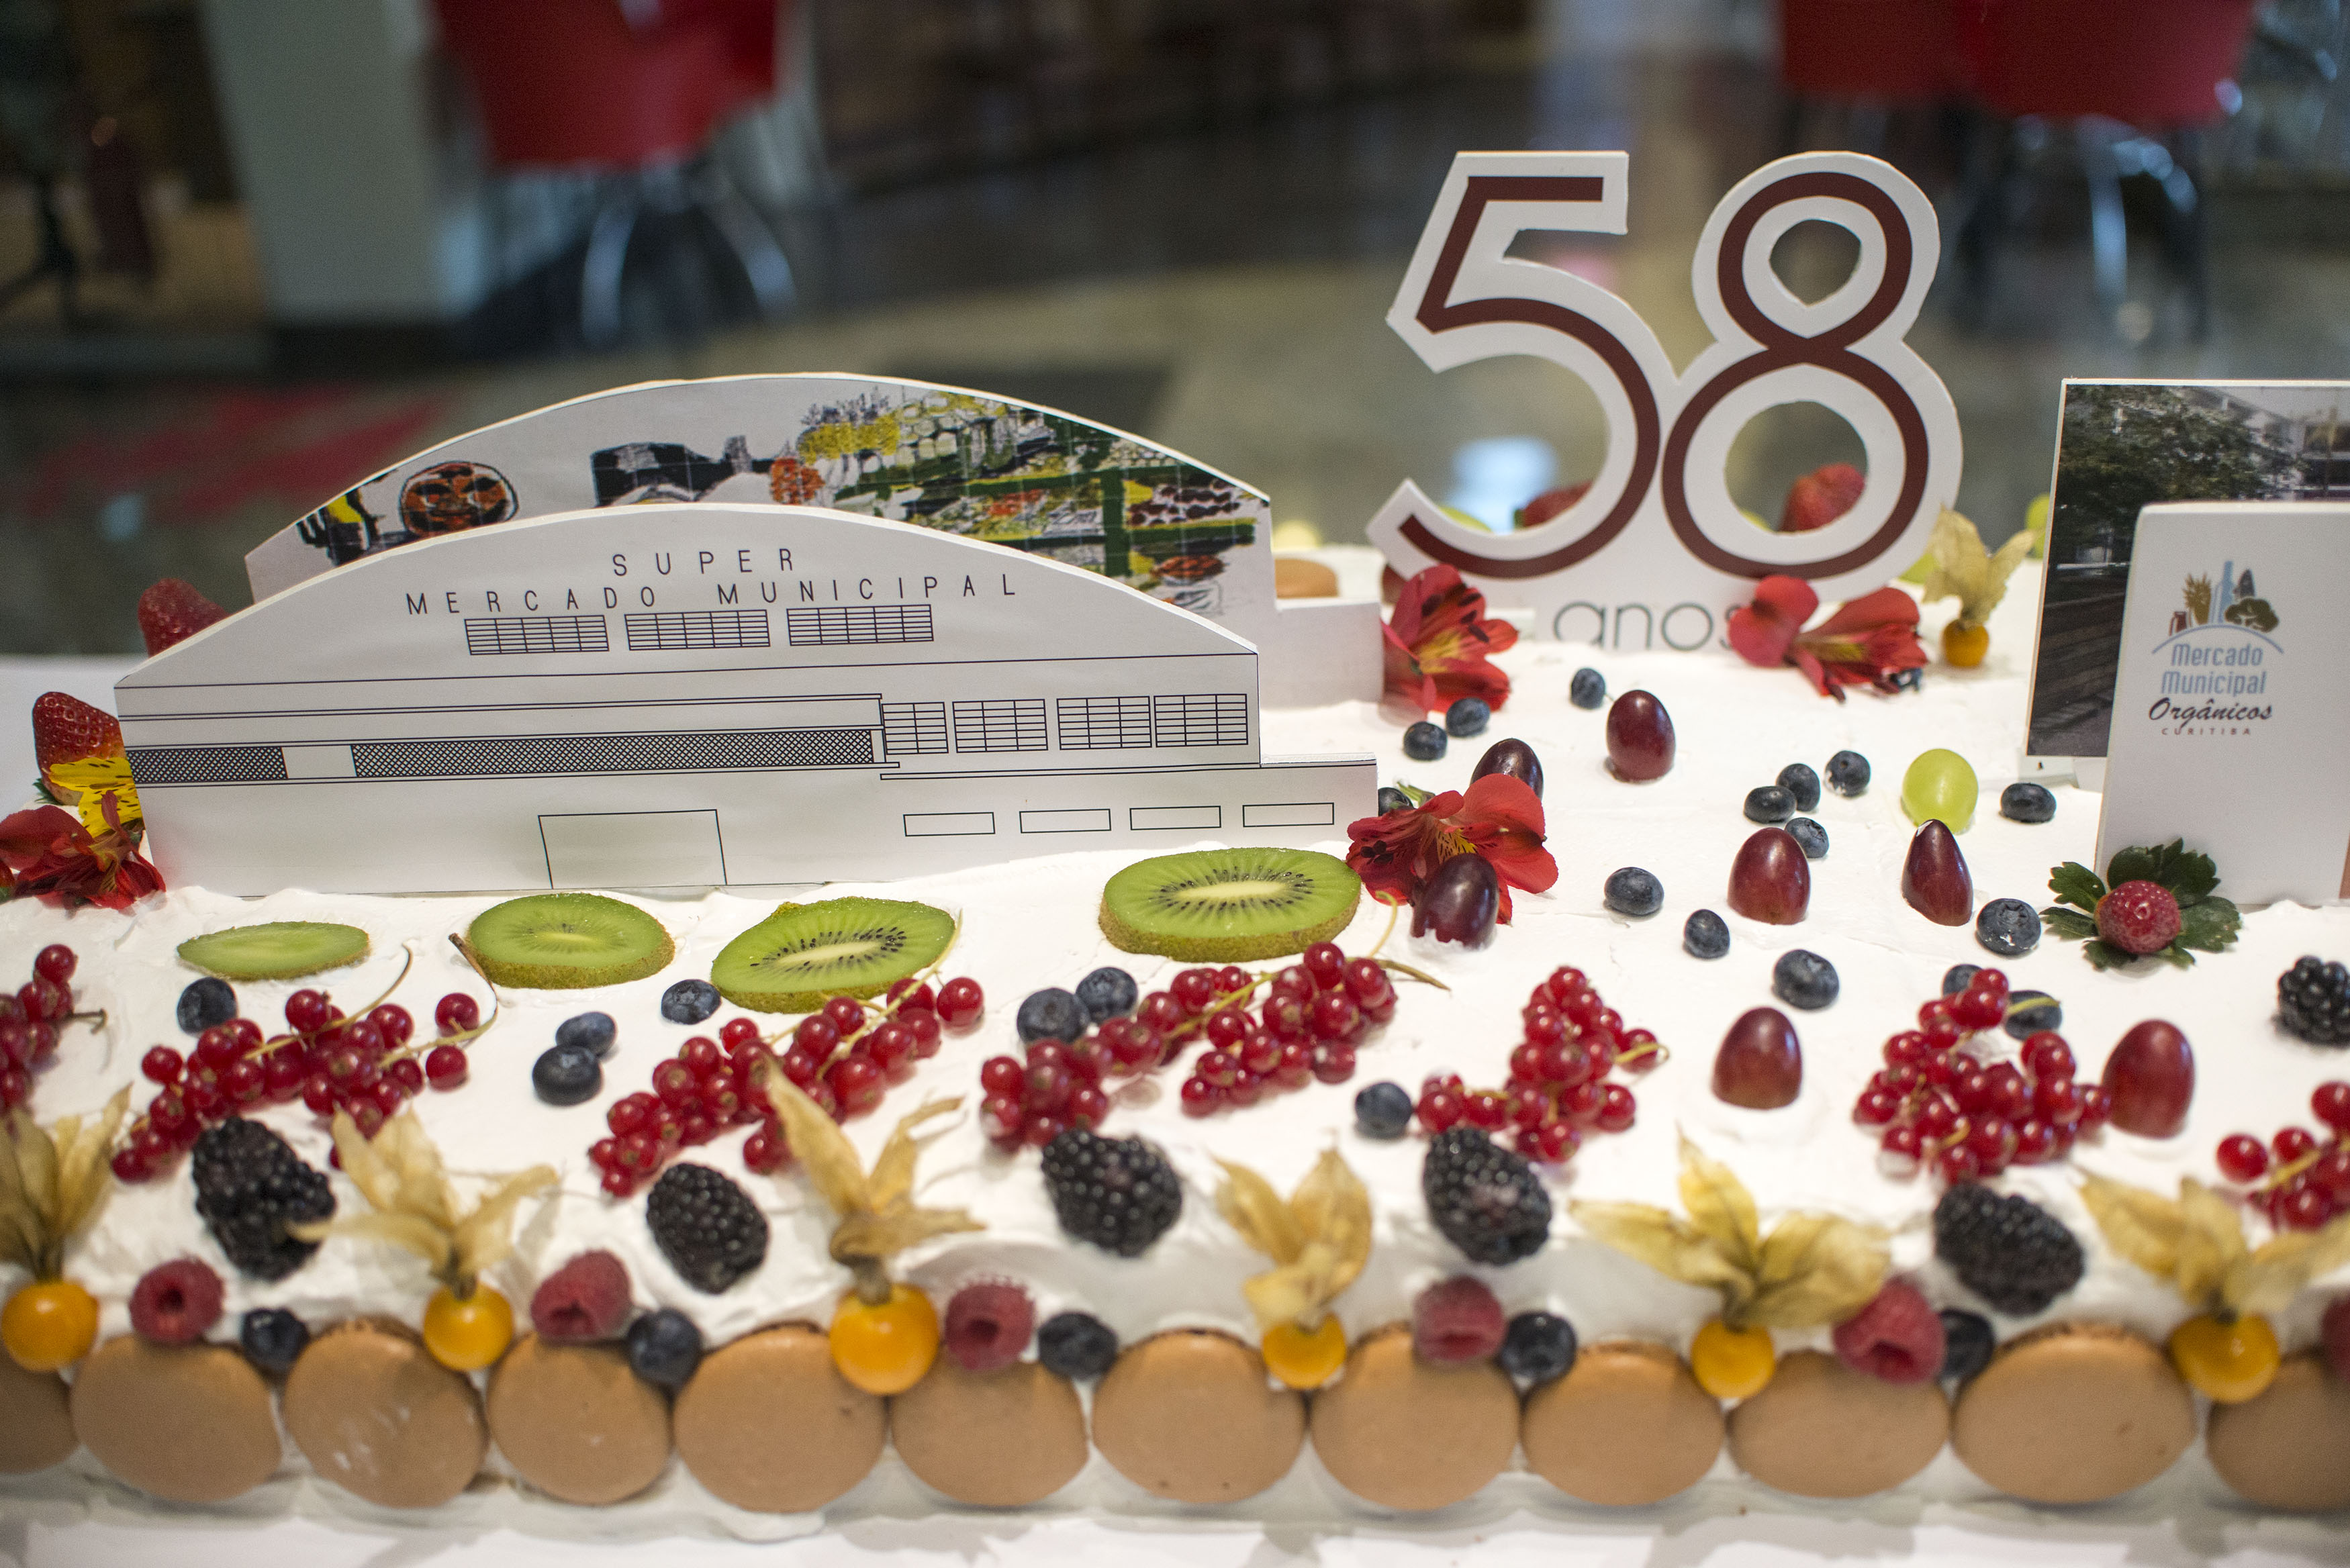 Aniversário de 58 anos do Mercado Municipal.